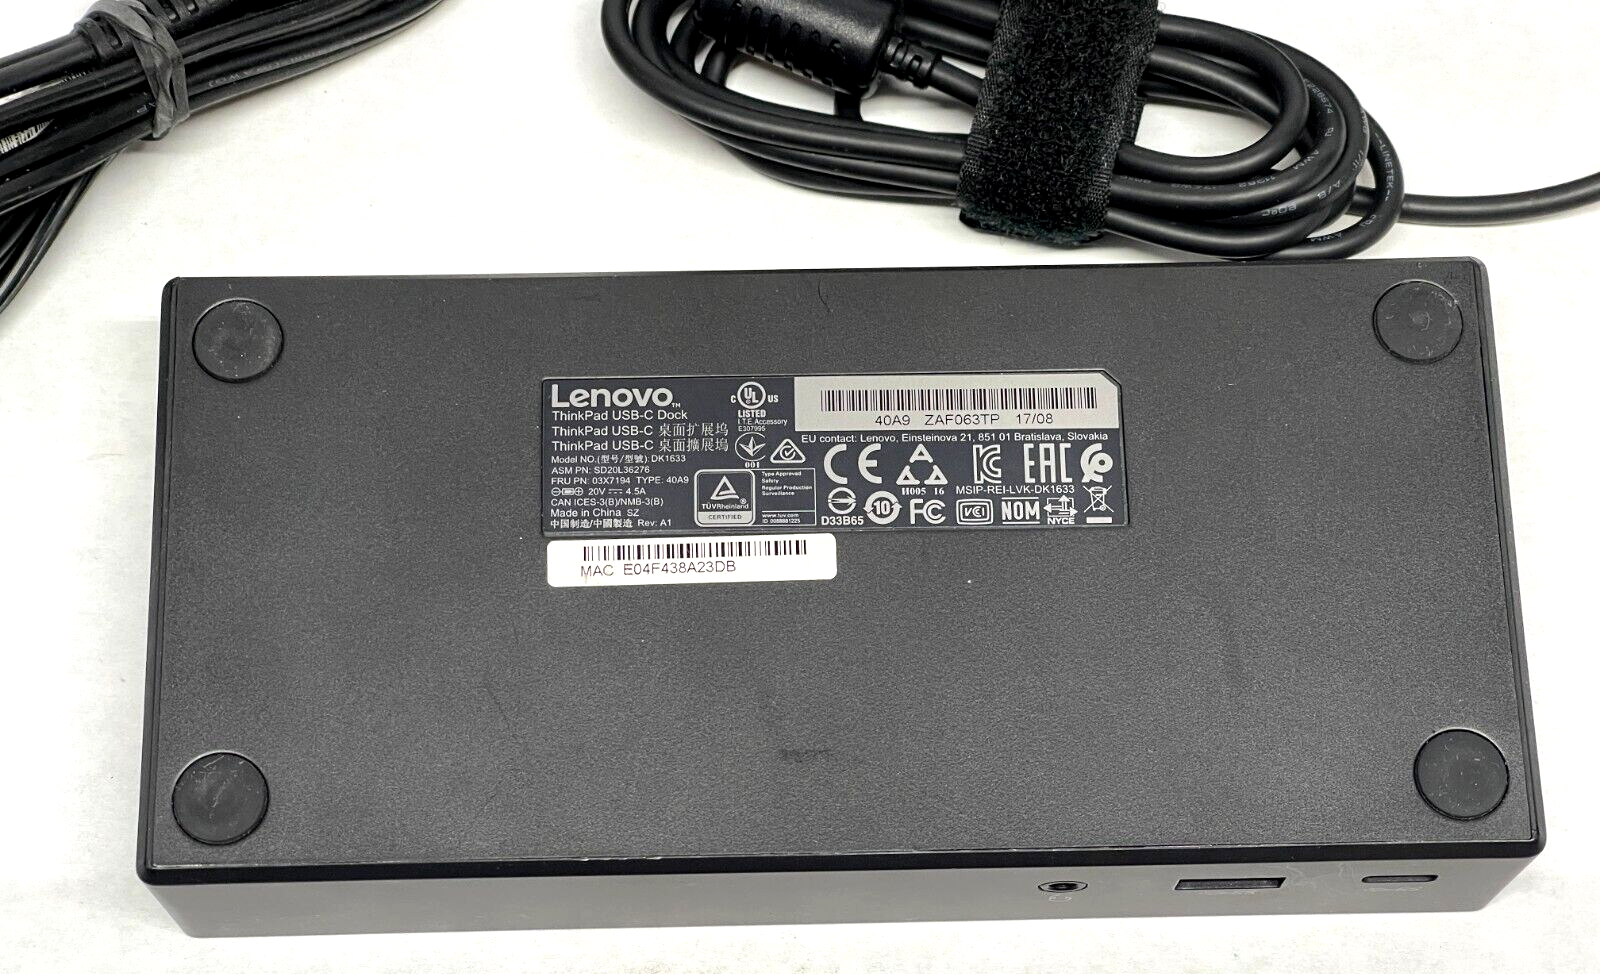 Док-станция Lenovo THINKPAD USB-C Dock 40a9. T me hq combo